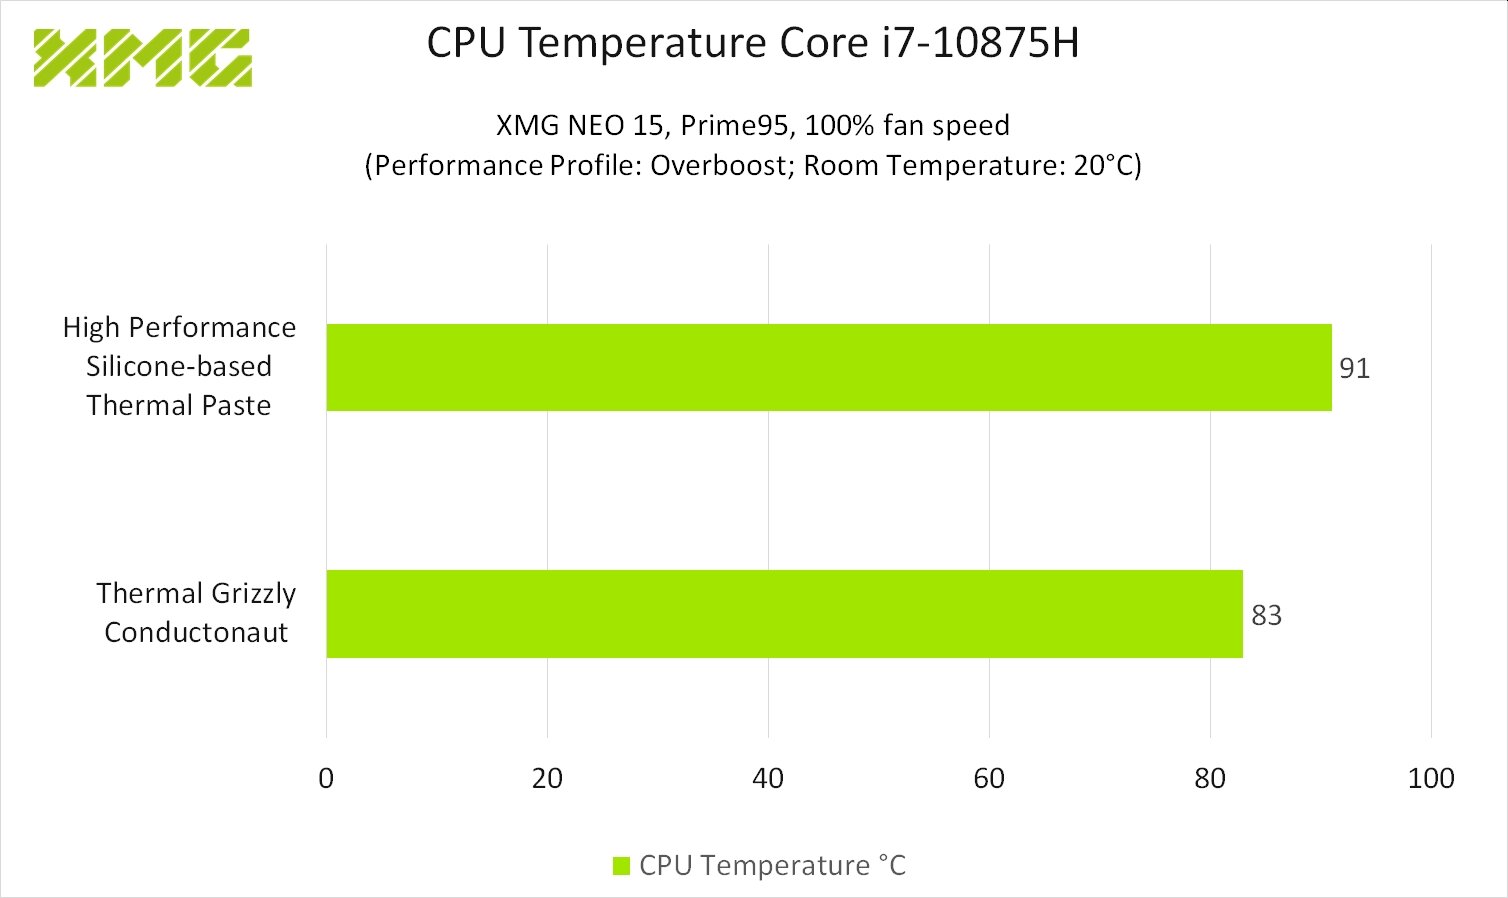 CPU Temperature Conductonaut vs Silicone